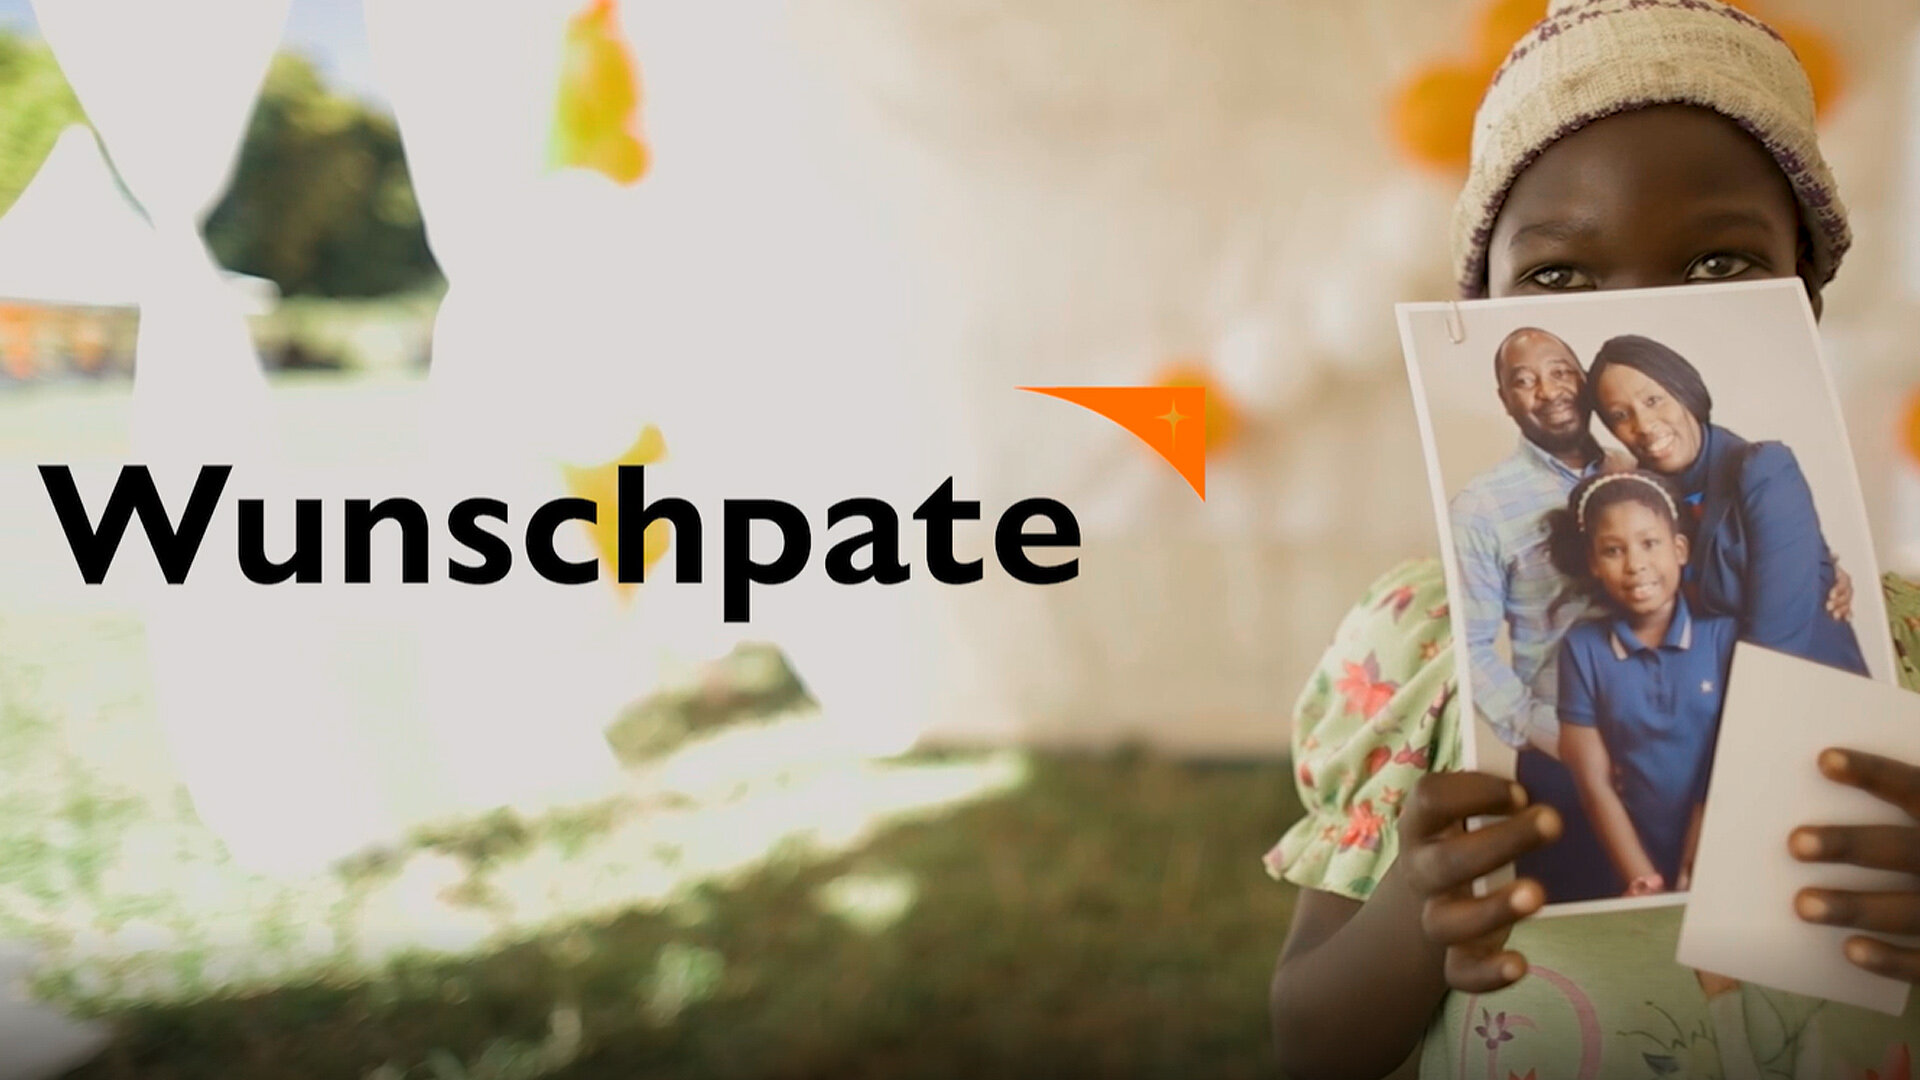 Video-Thumbnail für einen Film über das Wunschpatenprogramm von World Vision, bei dem sich Patenkinder ihre Wunschpaten anhand von Fotos selbst aussuchen